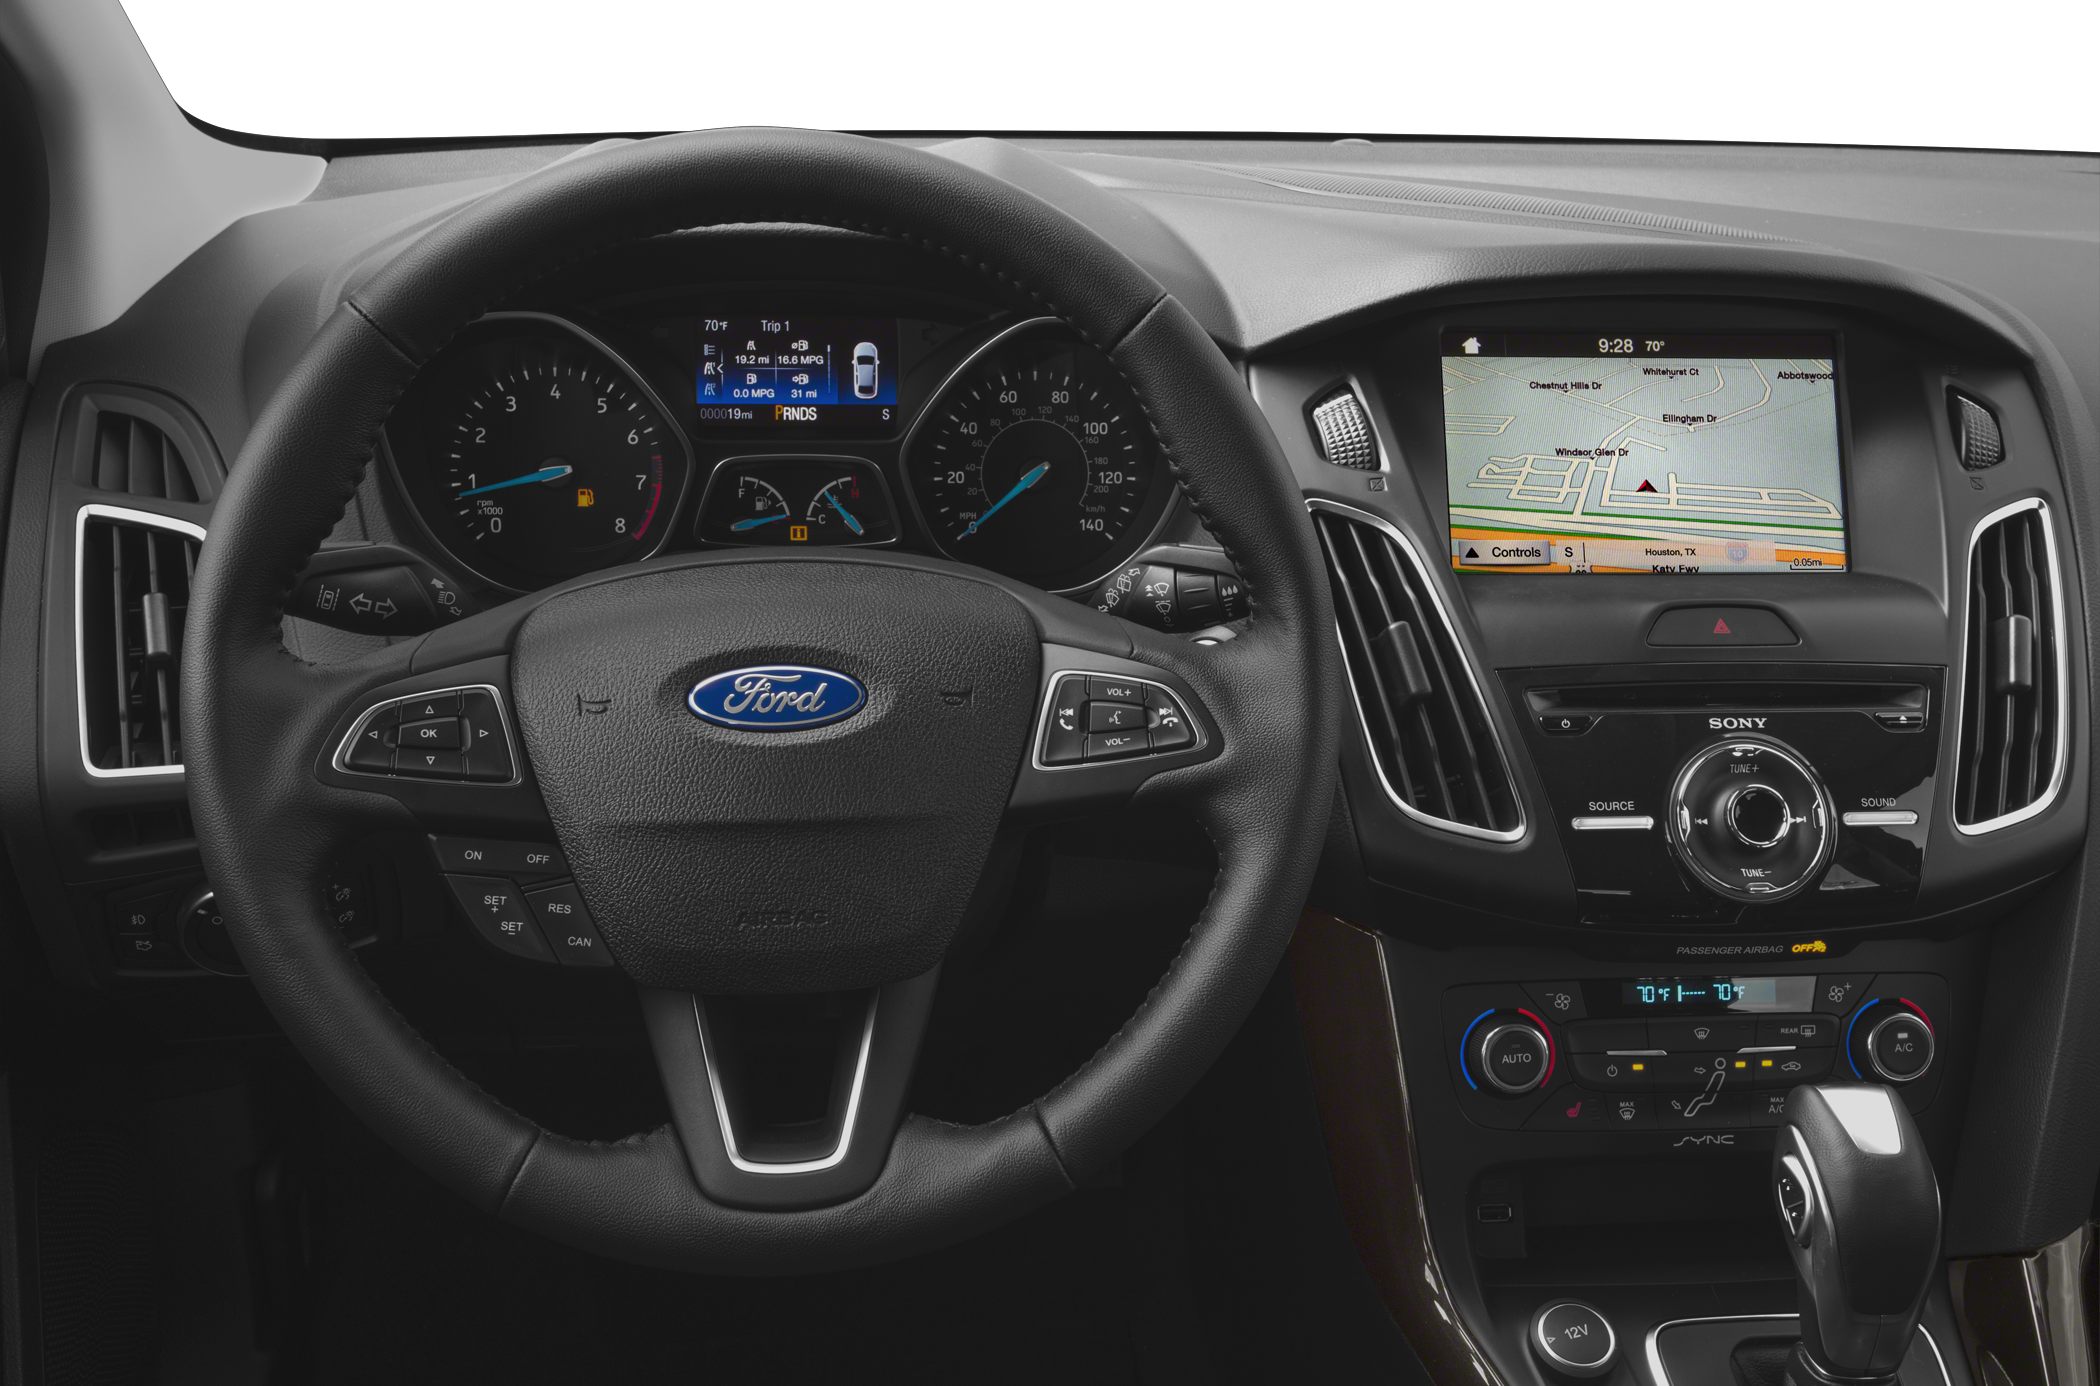 Фотографии нового Ford Focus 2017: цвета кузова, интерьер ...